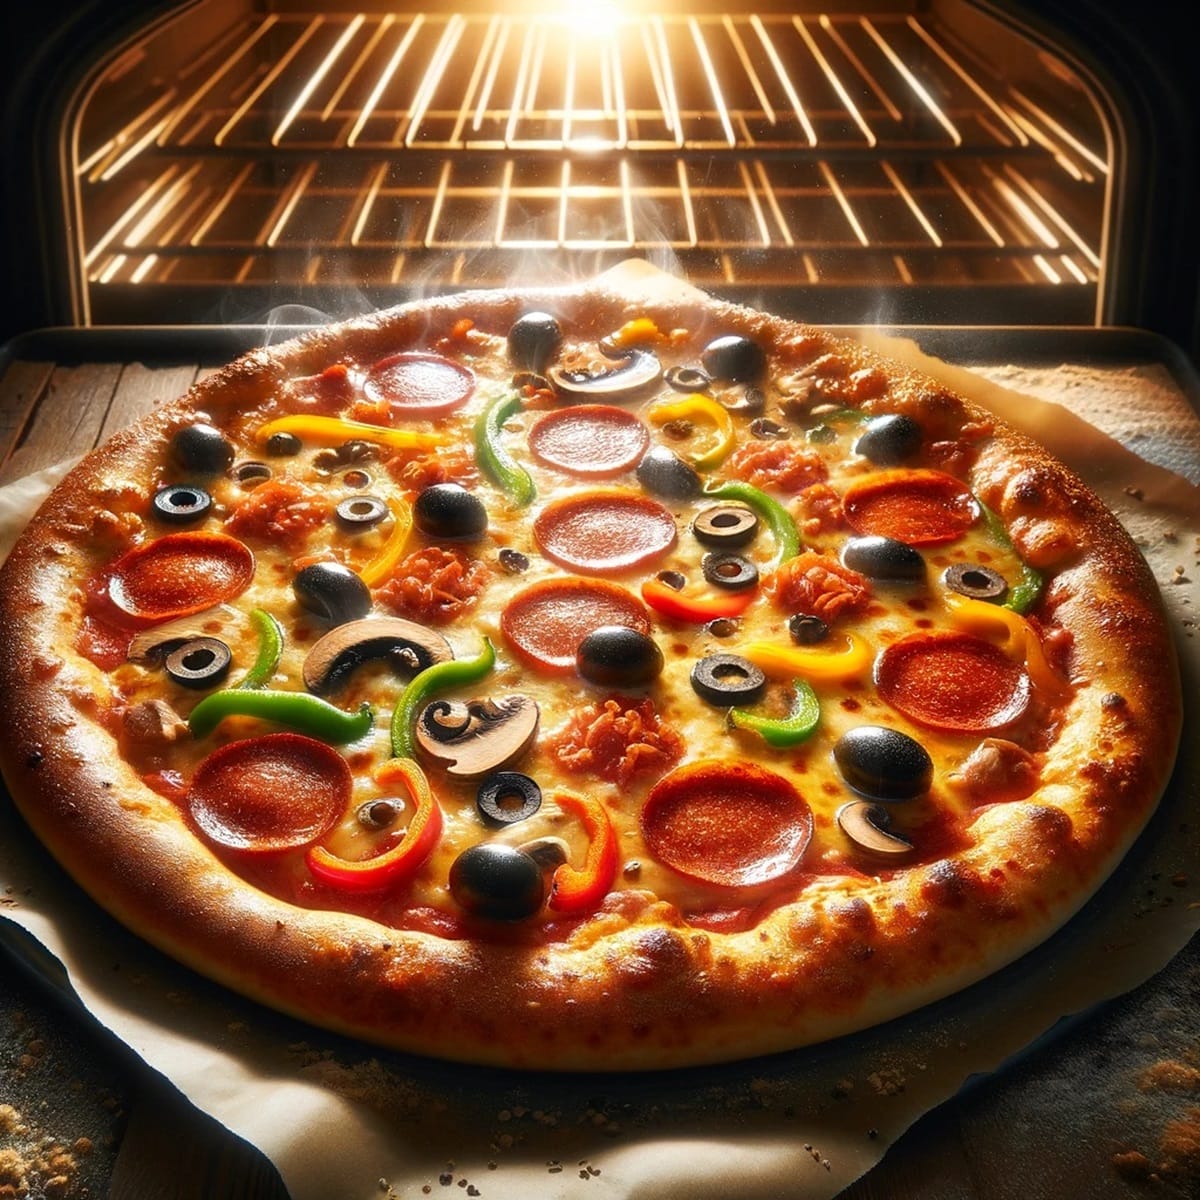 Los 9 de febrero, el mundo entero celebra el Día Mundial de la Pizza